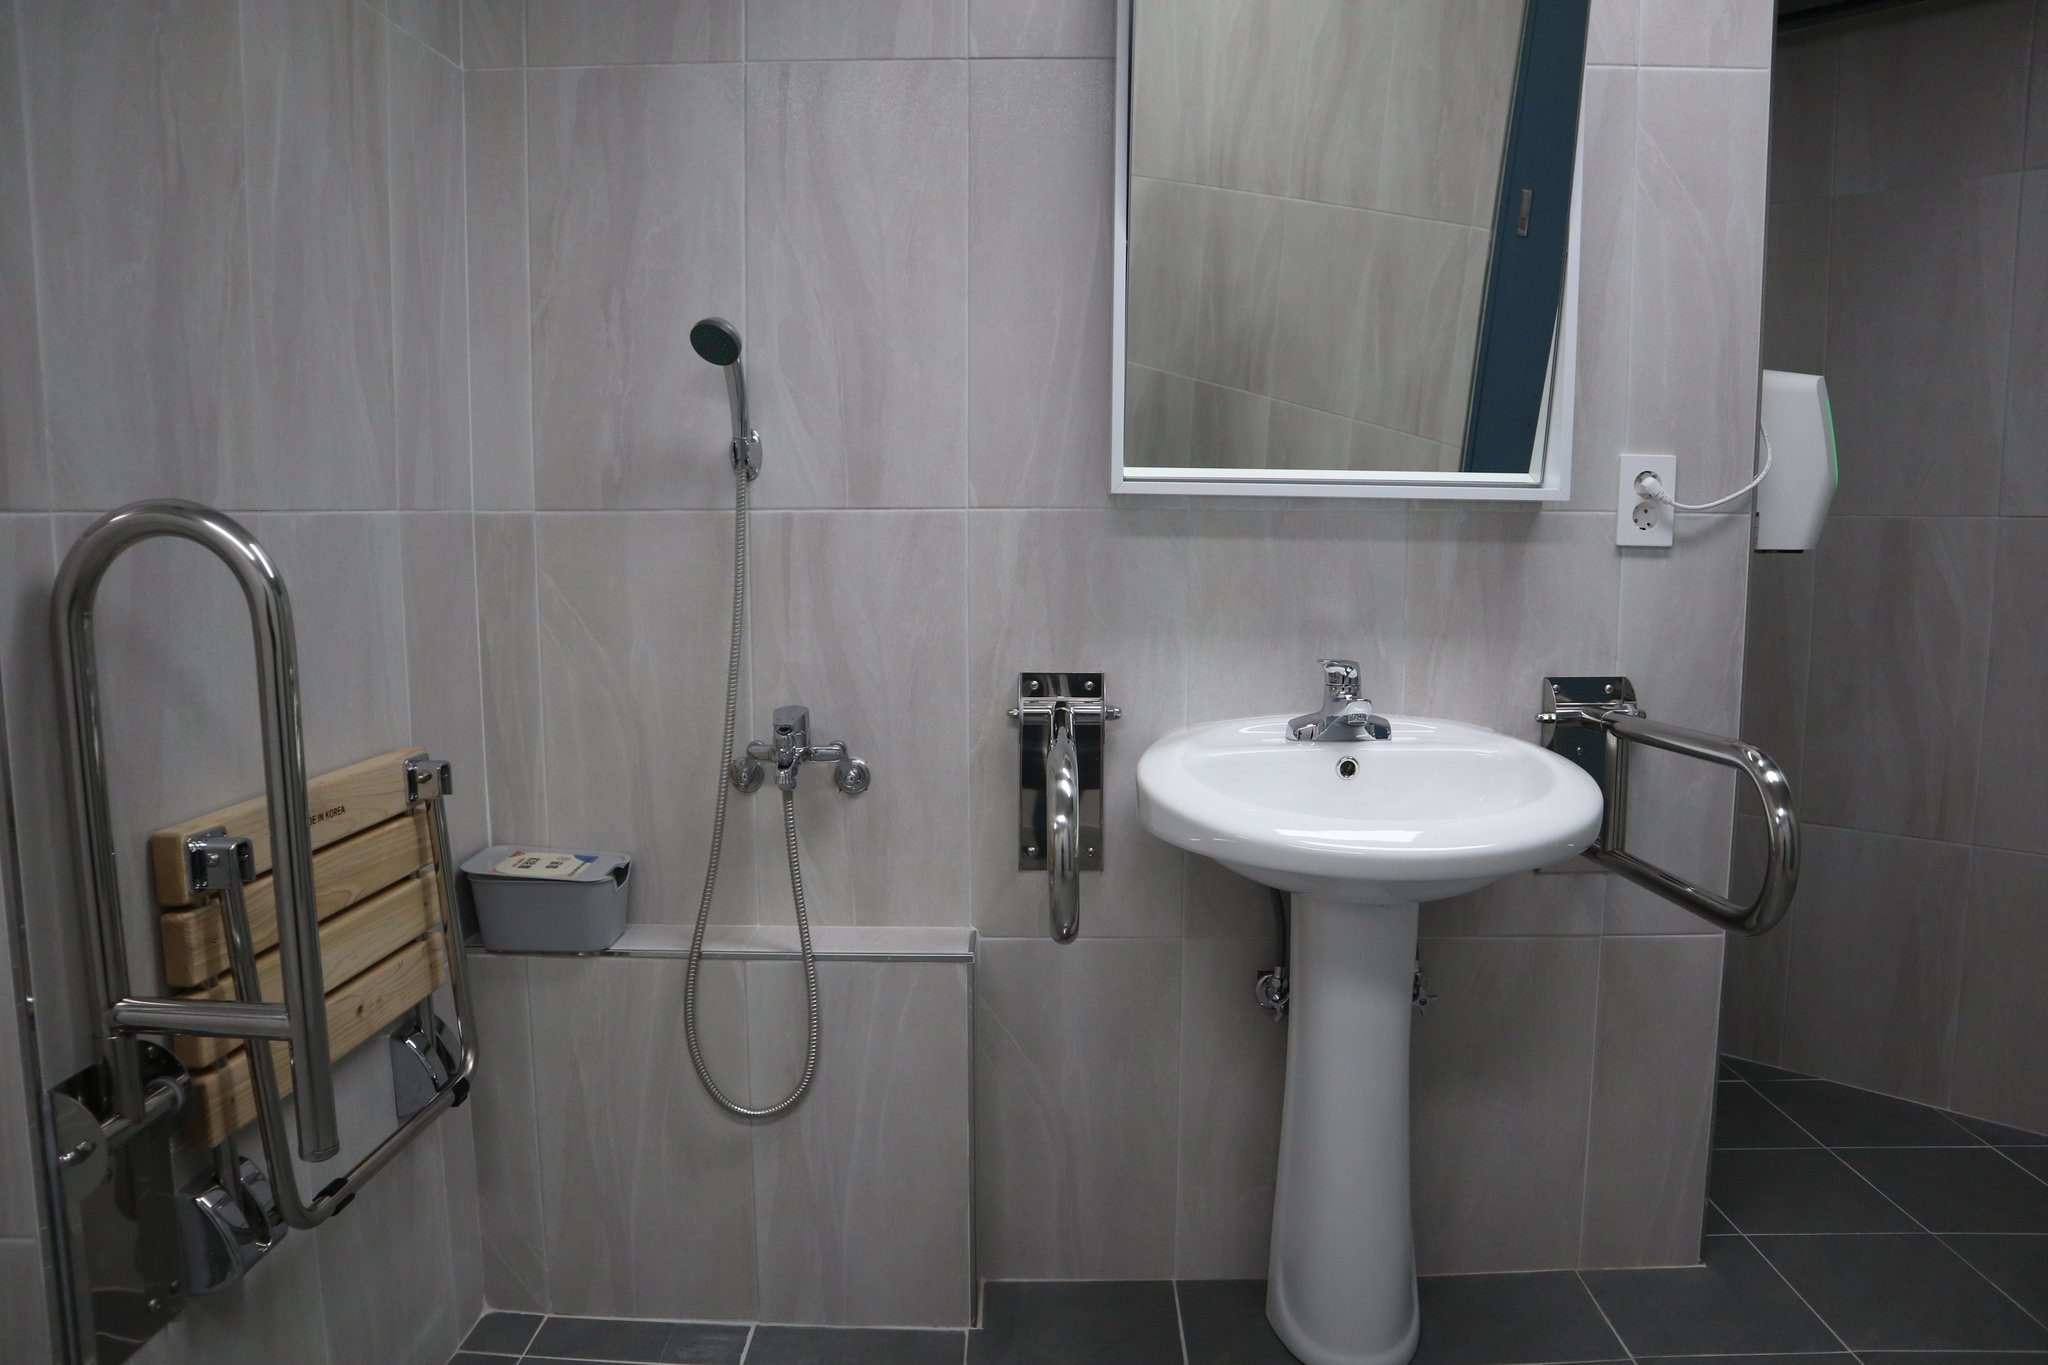 '모두의 화장실' 내에 마련된 용변 중 실수했을 때를 대비한 샤워기. 세면대 위 거울은 키에 맞춰 각도를 위아래로 조절할 수 있다. 김윤교 인턴기자